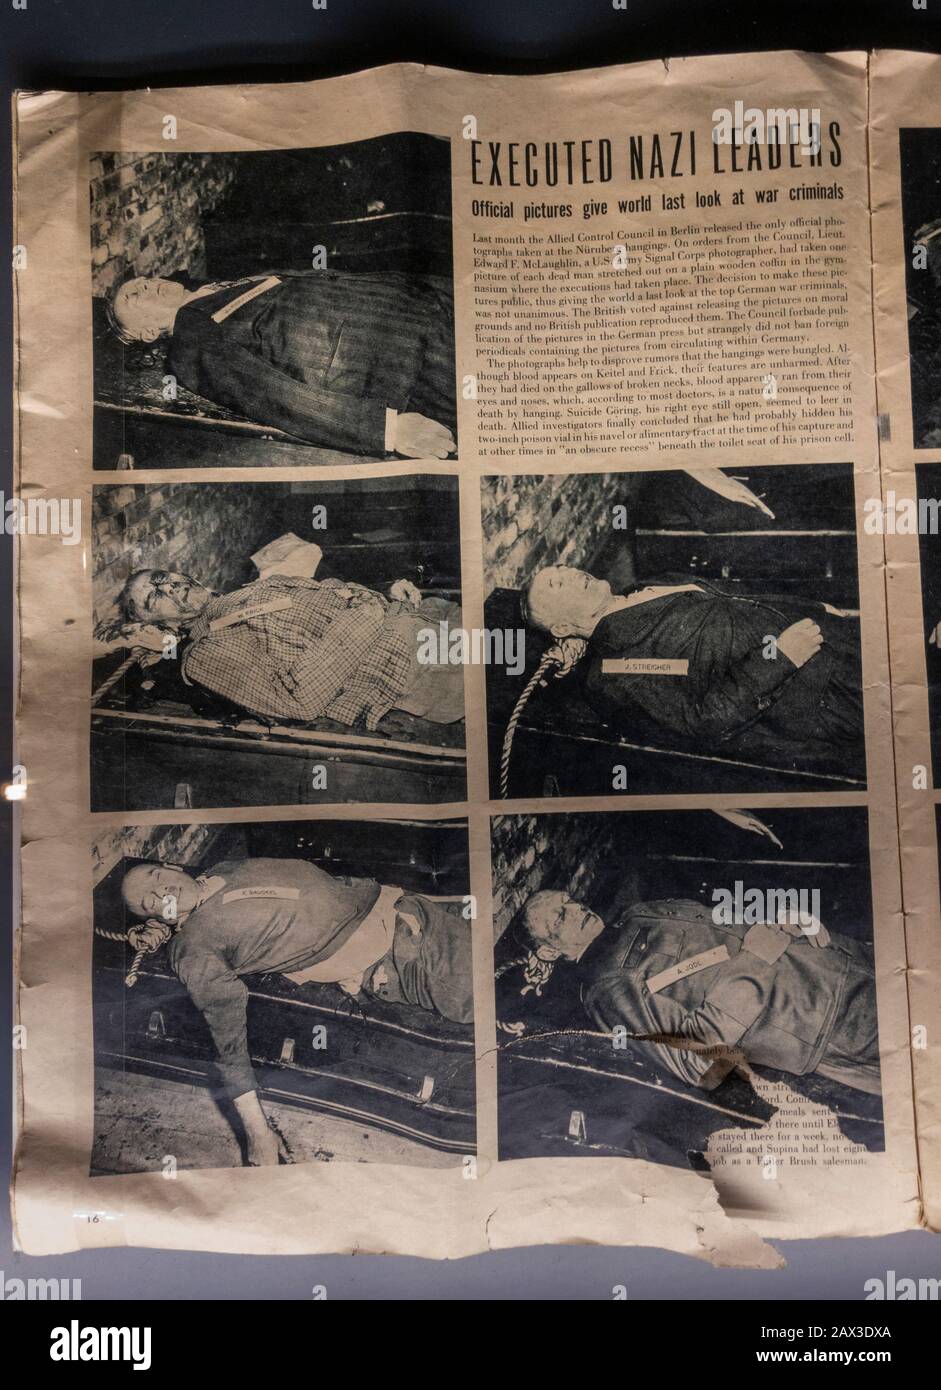 Fotos von Kriegsverbrechen Nazi-Führer nach der Hinrichtung, Dokumentationszentrum Nazi-Partei-Rallye-Gelände, Nürnberg, Bayern, Deutschland. Stockfoto